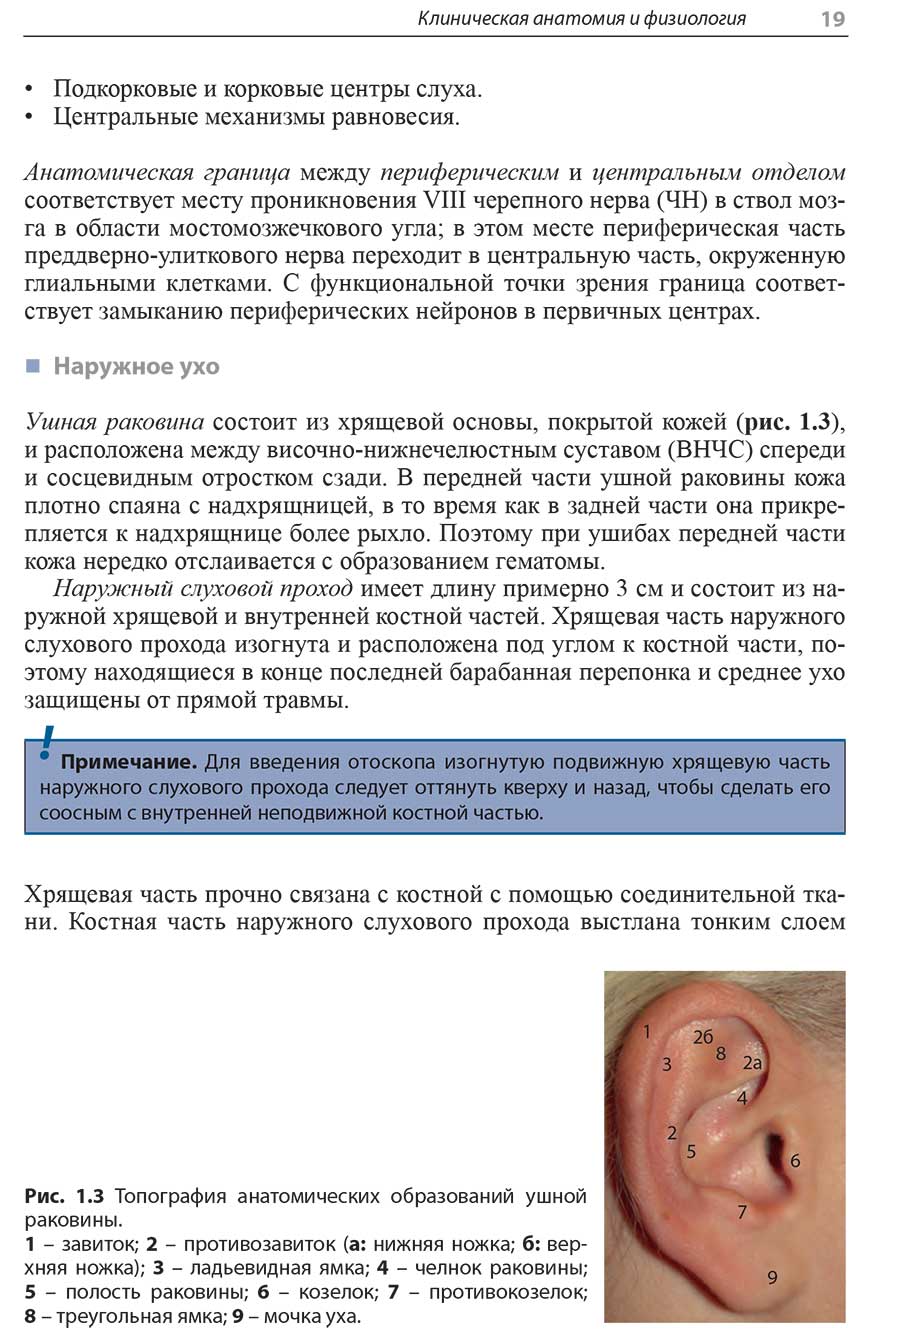 Рис. 1.3 Топография анатомических образований ушной раковины.